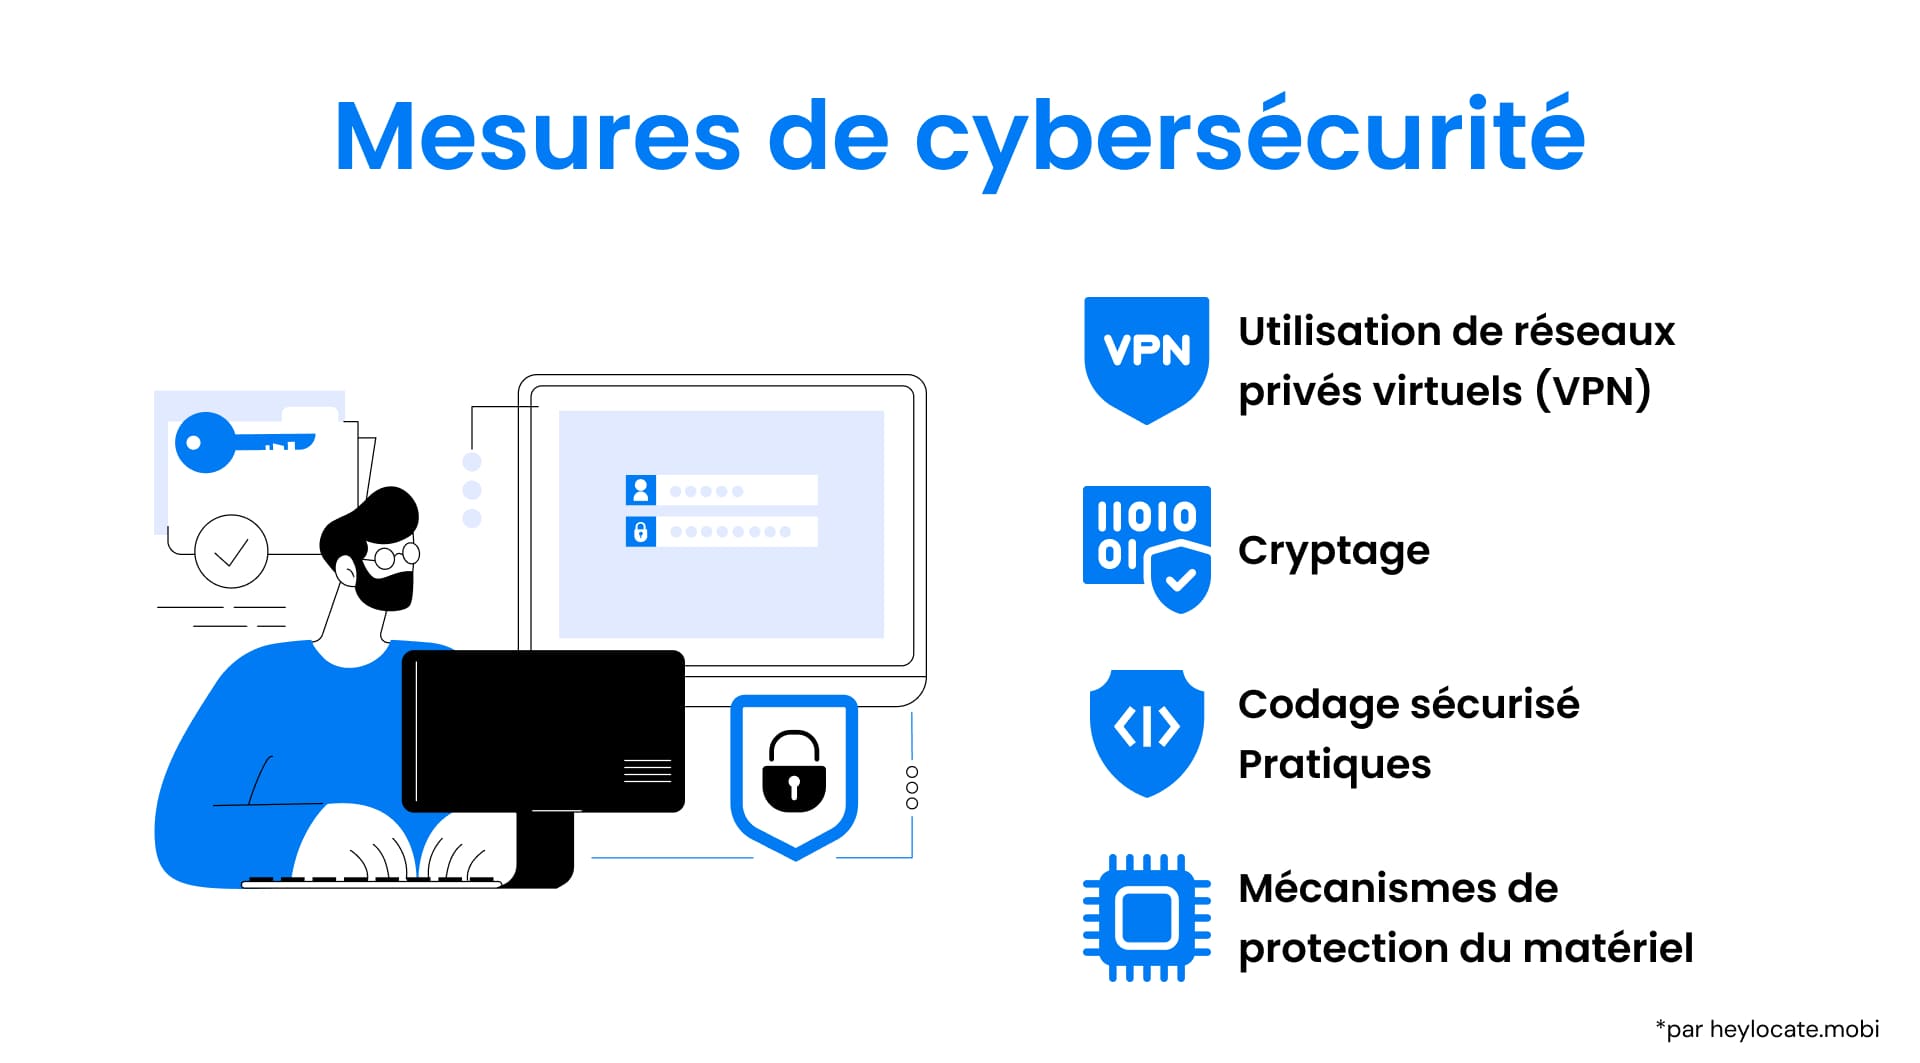 Illustration d'une personne travaillant sur un ordinateur avec des symboles de sécurité et des mesures de cybersécurité avec des icônes indiquant diverses stratégies